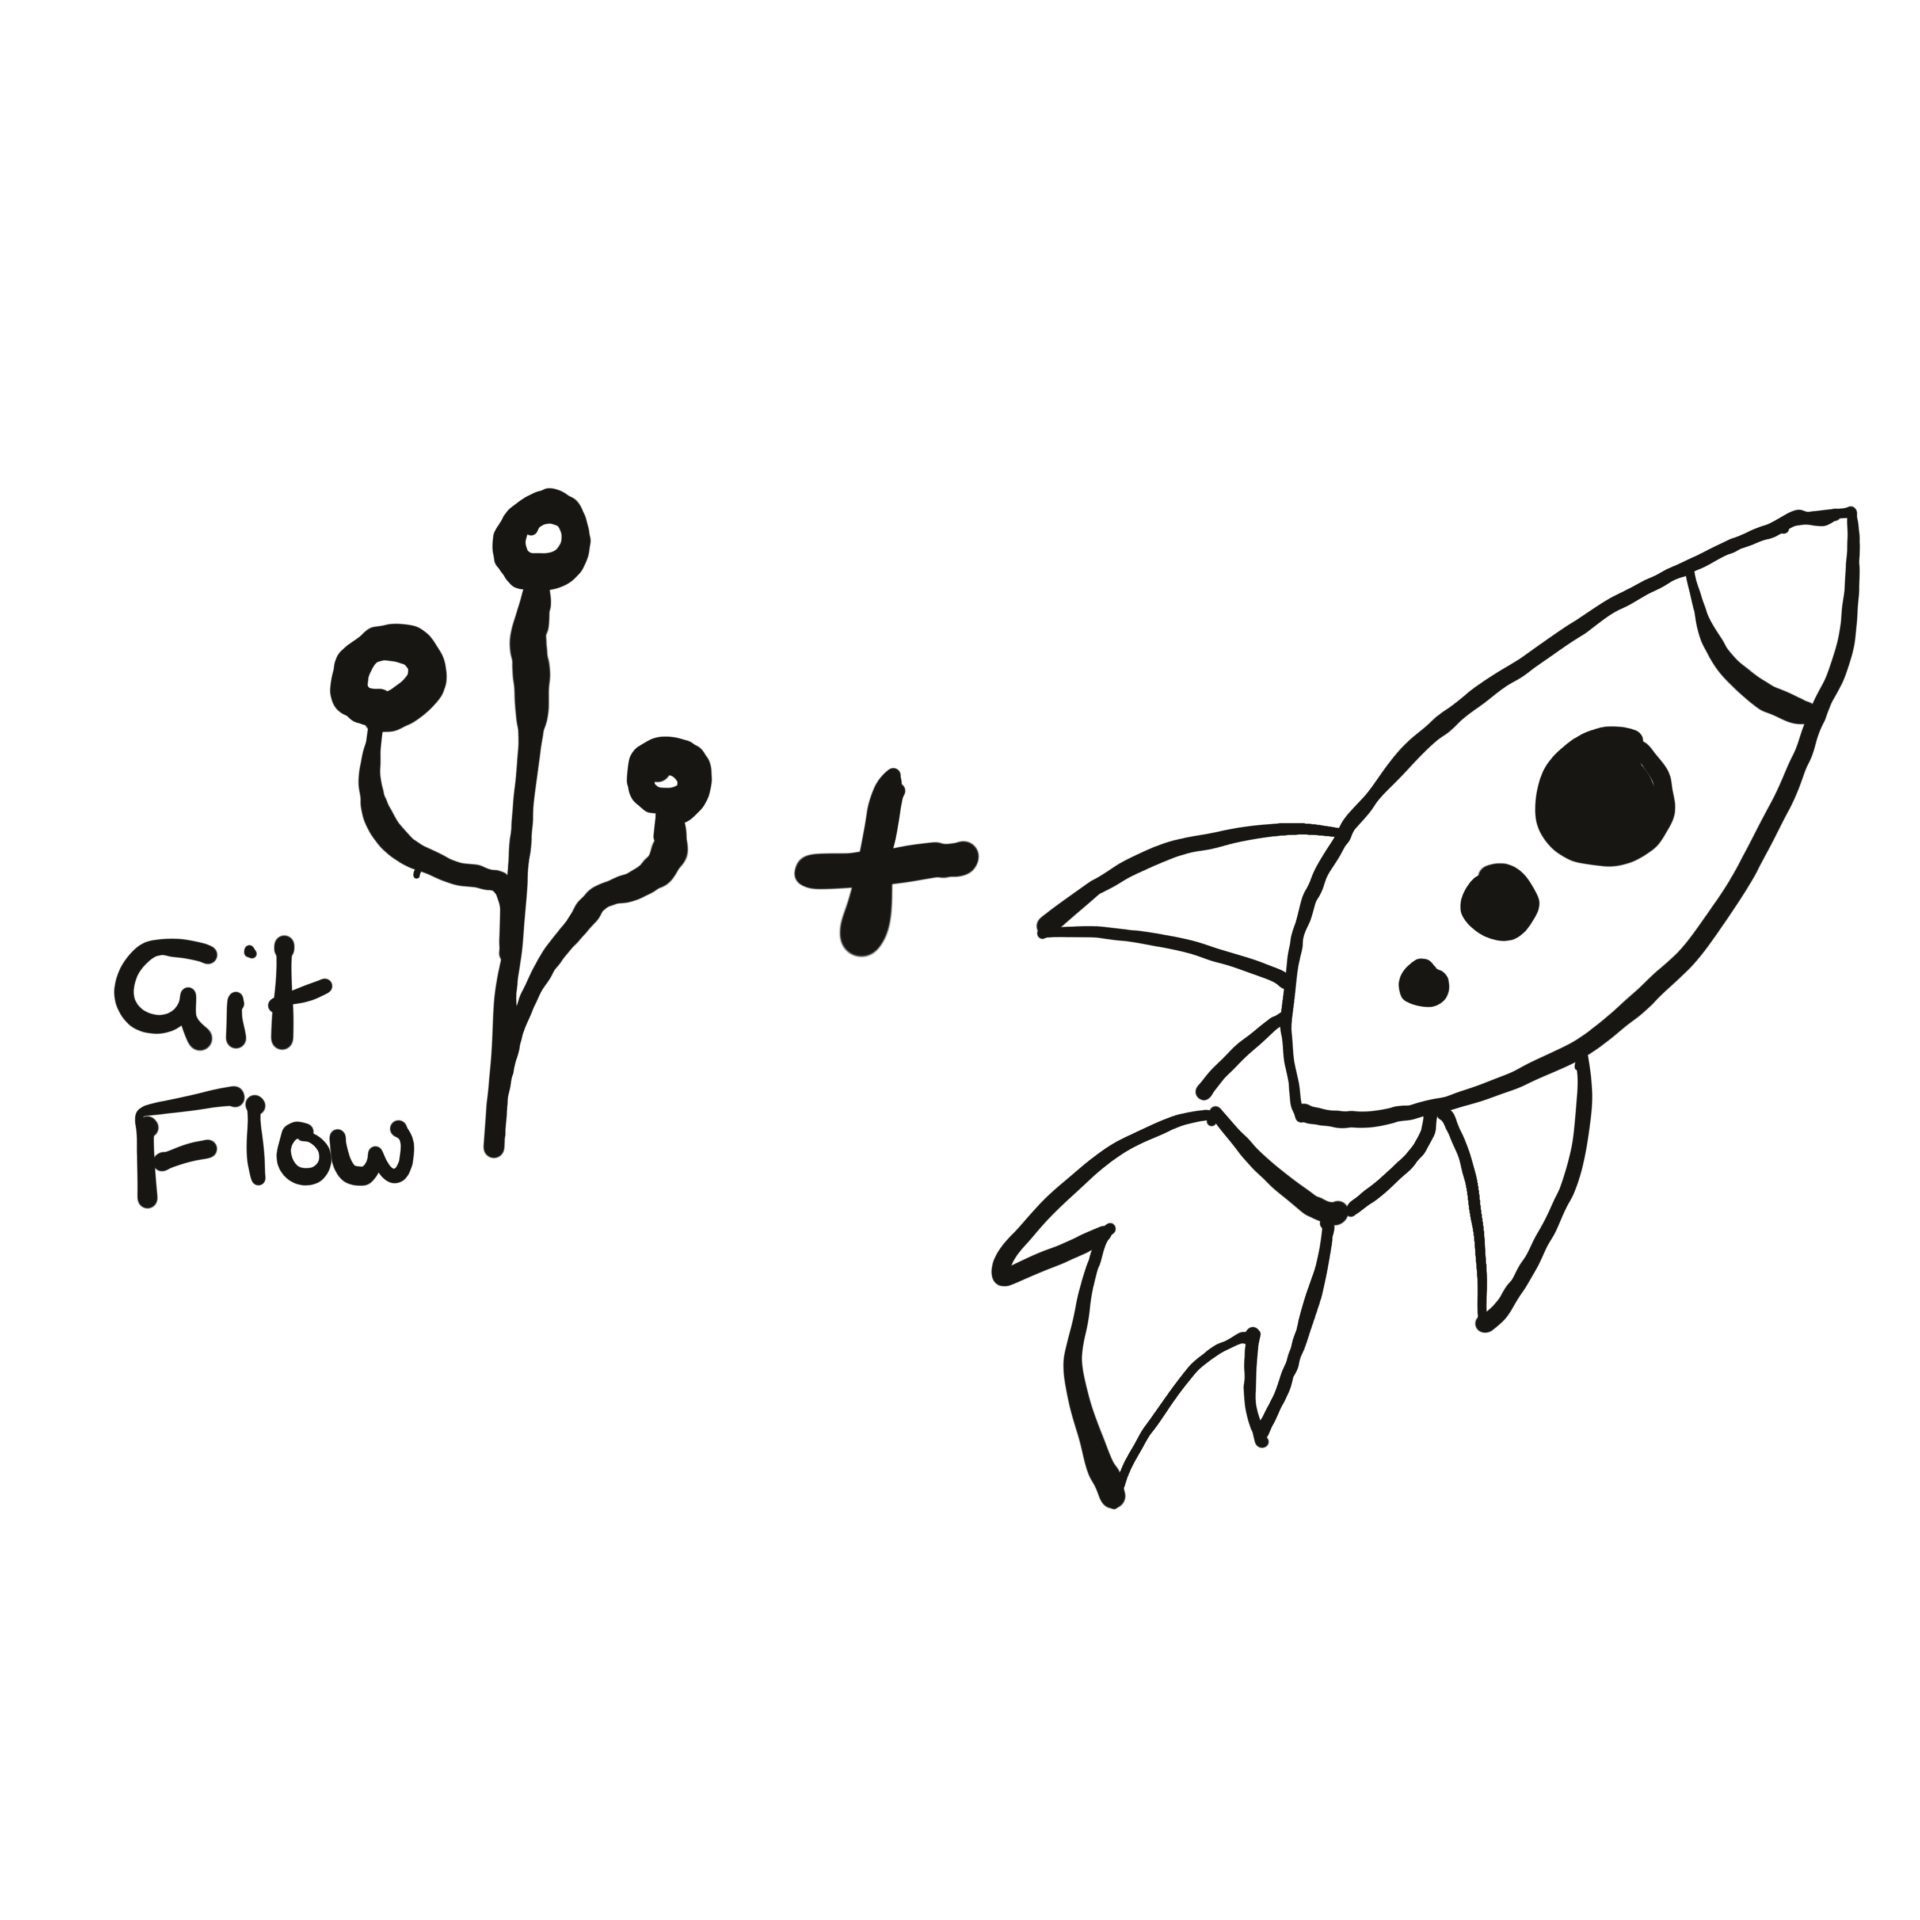 Gitflow logo plus a rocket ship icon